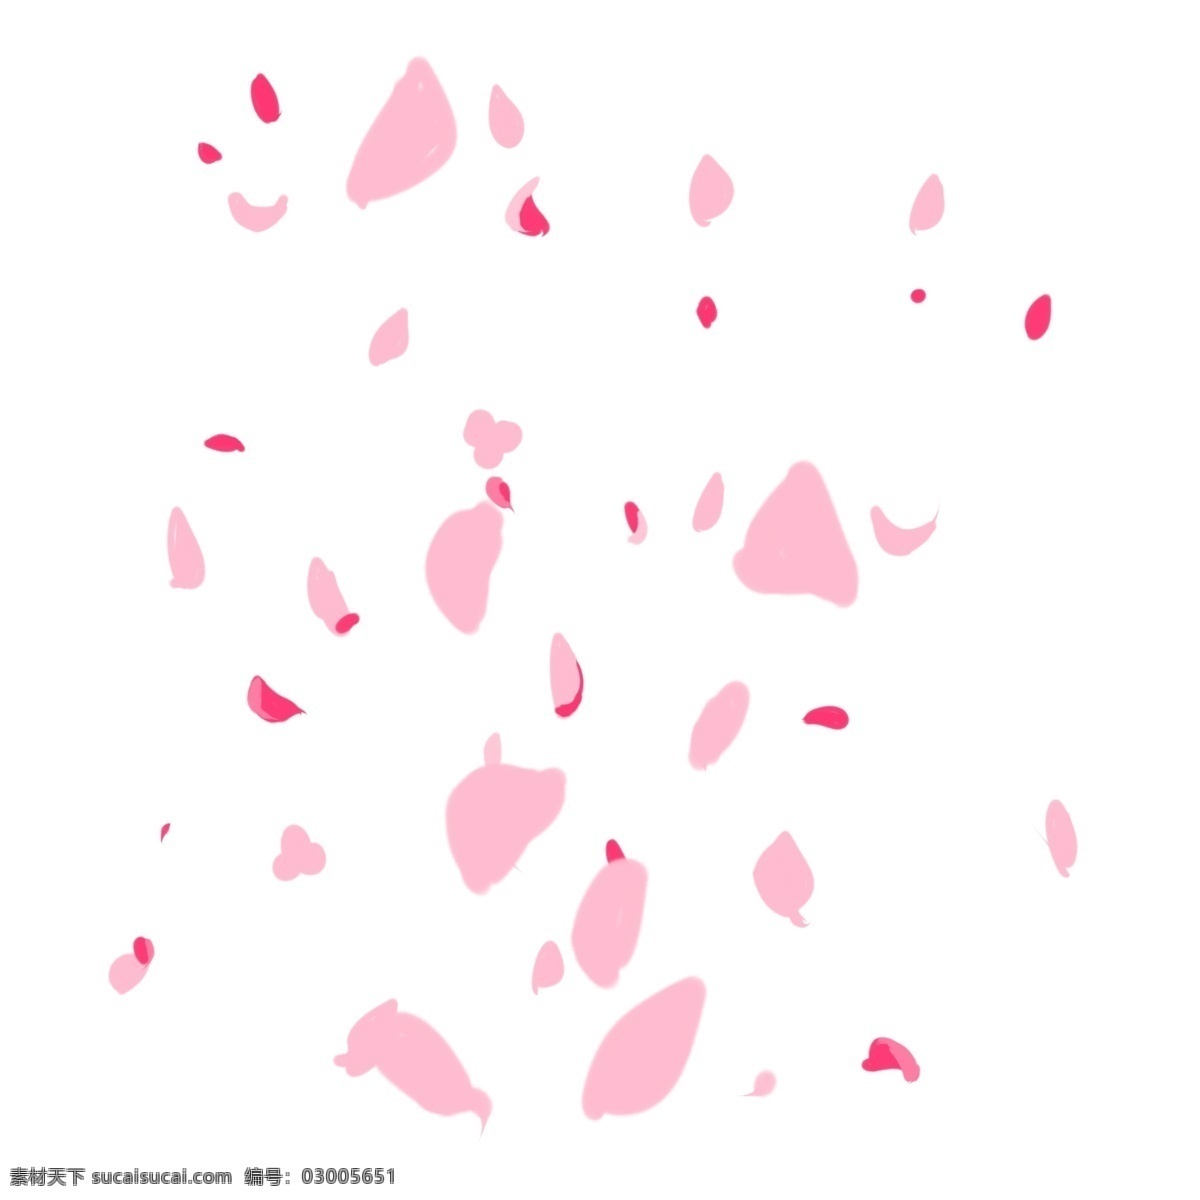 婚礼 花瓣 手绘 插画 婚礼花瓣 粉色的花瓣 漂亮的花瓣 精美花瓣 花瓣装饰 情人节花瓣 浪漫花瓣